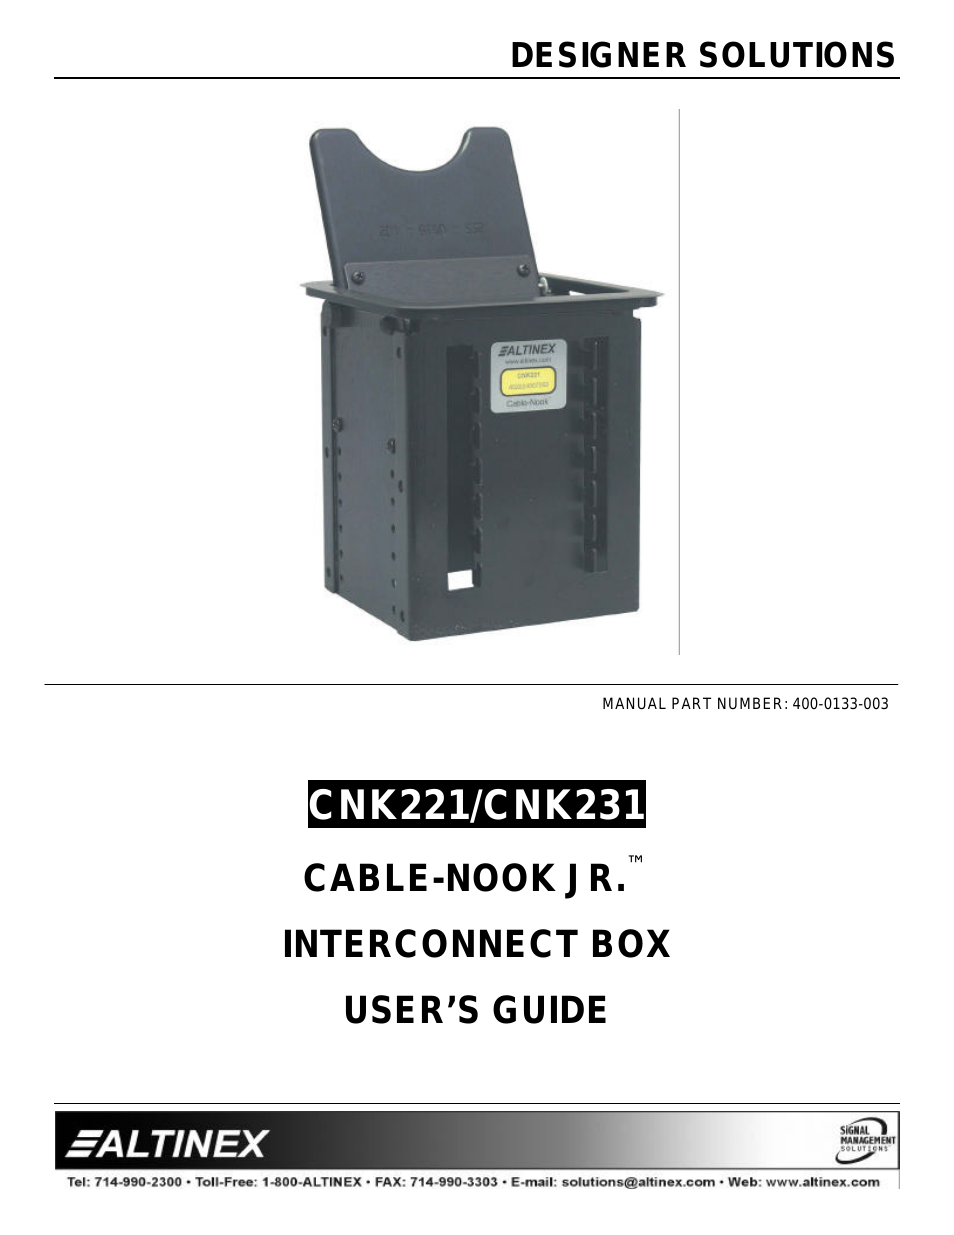 CABLE-NOOK JR CNK231